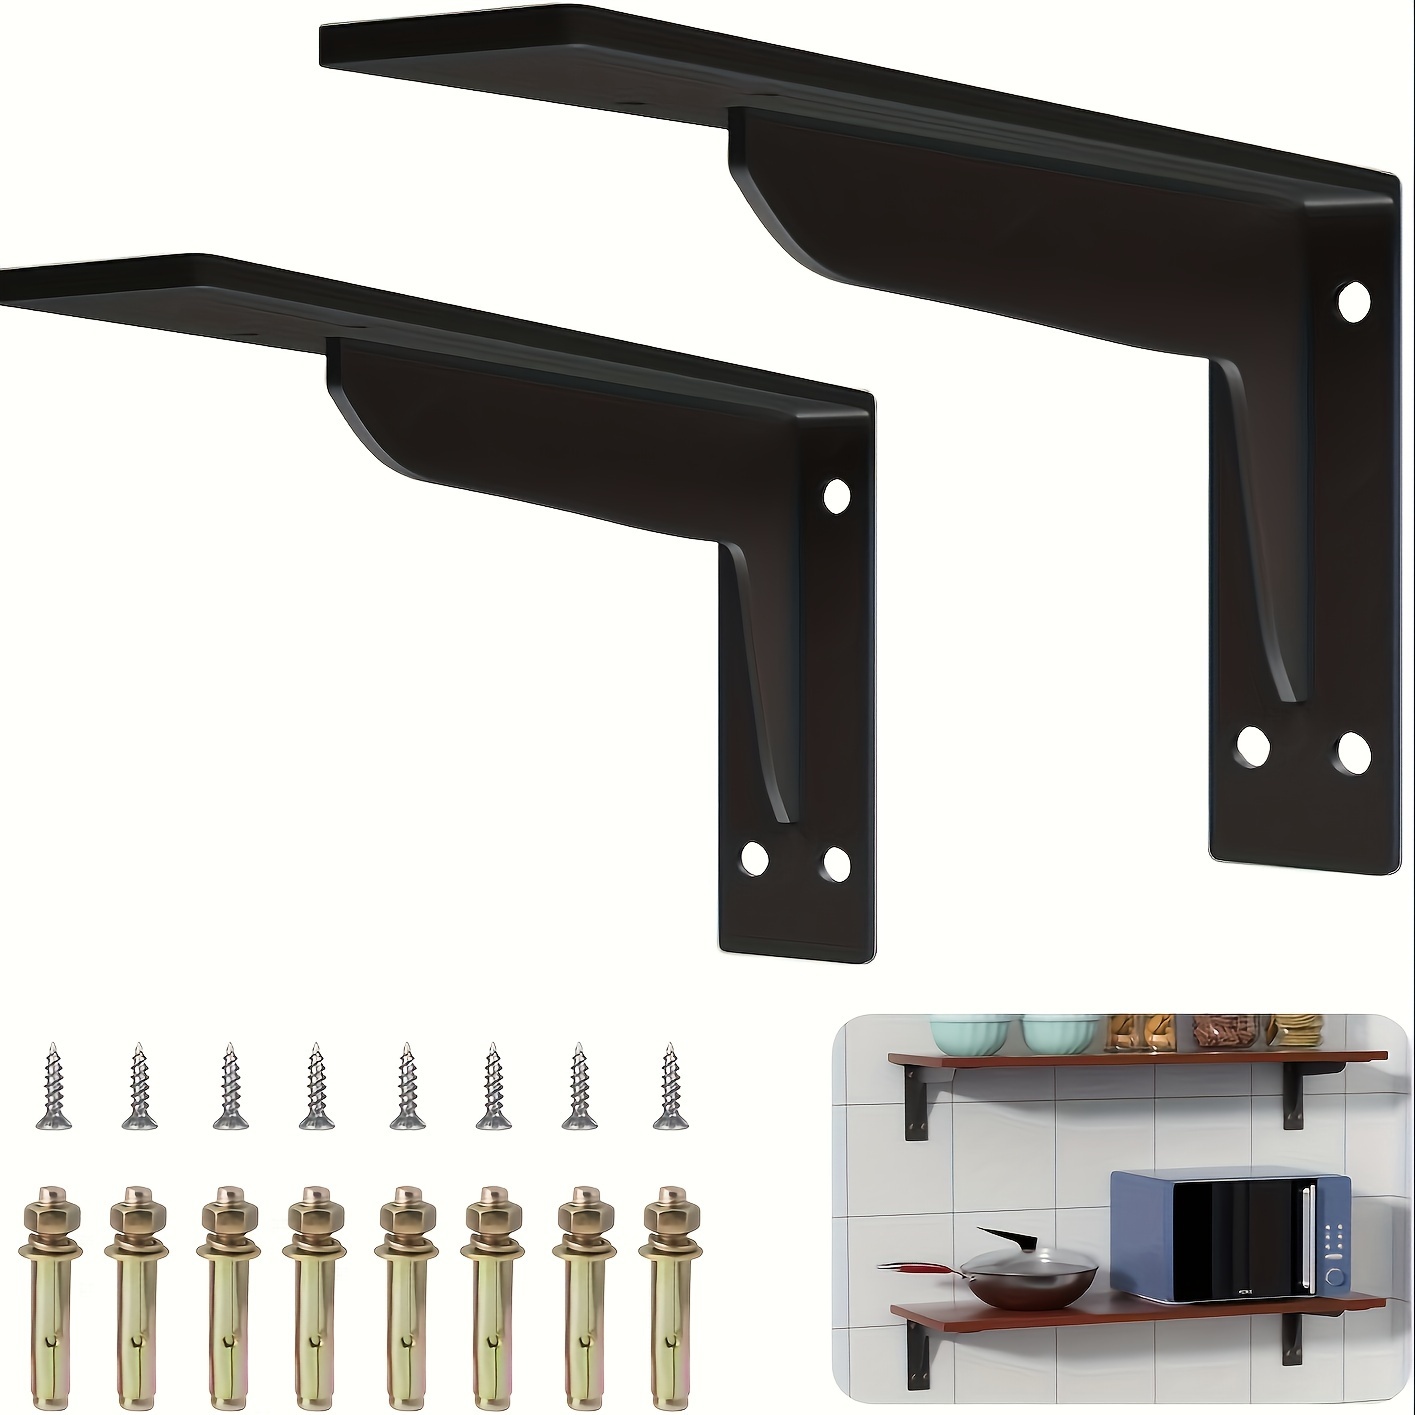  Soporte de estante blanco y negro, soportes para estantes  flotantes, soporte de estante de andamio, soportes de estantería en forma  de L, 2 piezas, para muebles de madera de estantería, color